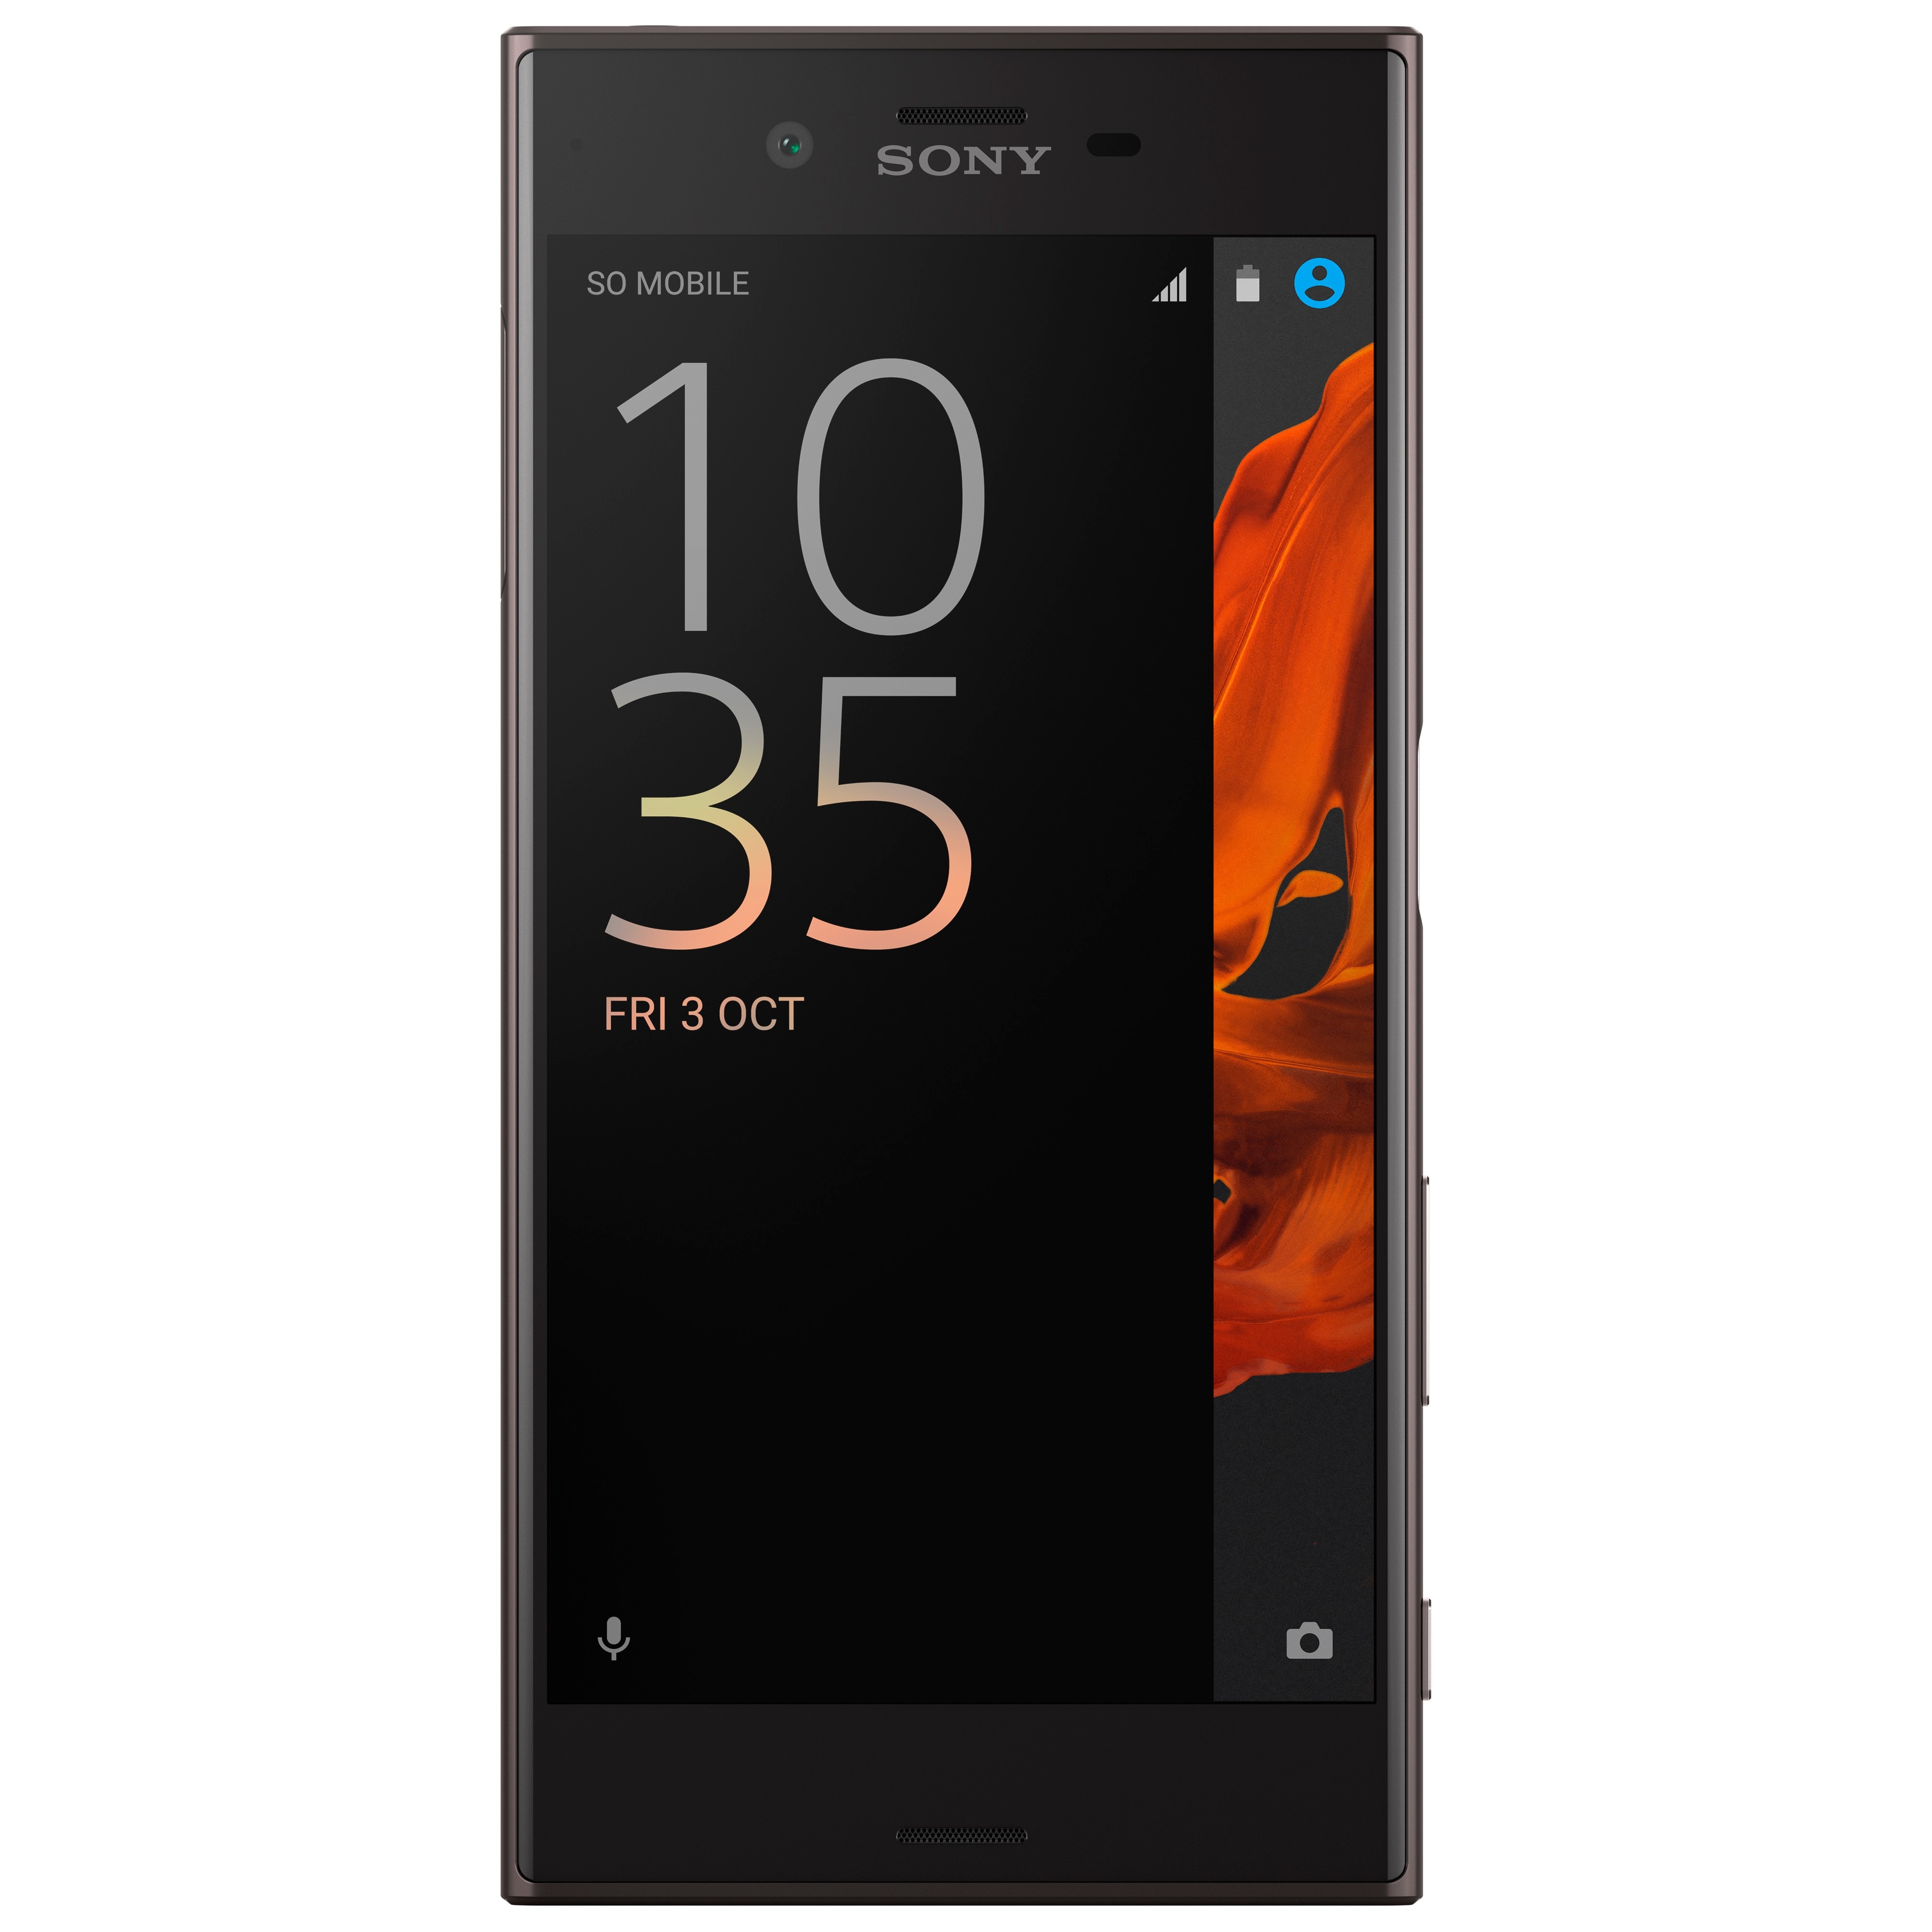 Sony Xperia XZ smarttelefon (sort) - Mobiltelefon - Elkjøp